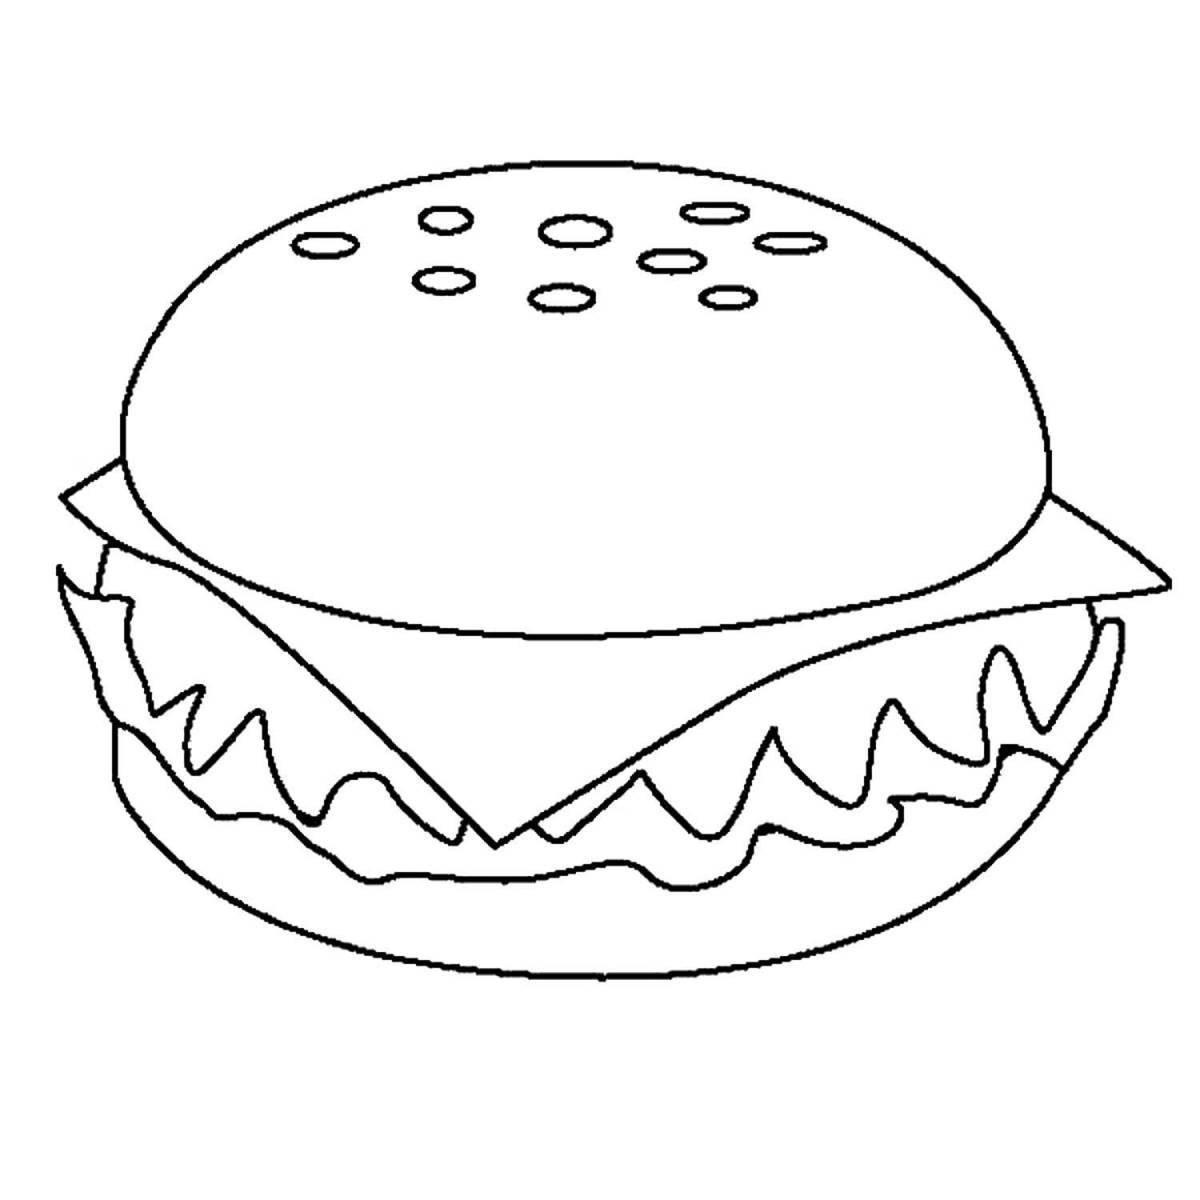 Invitation burger coloring book